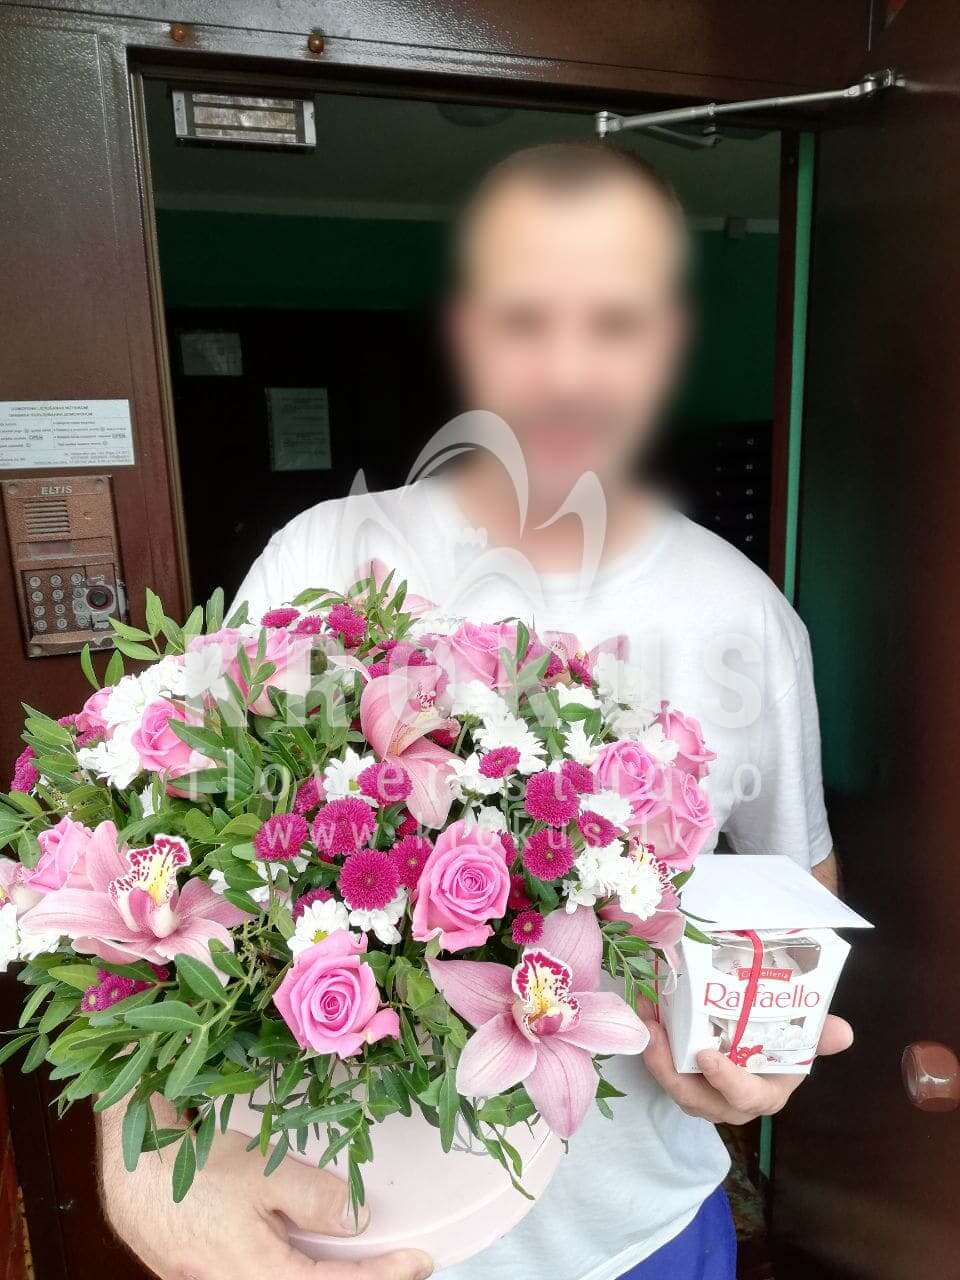 Доставка цветов в город Рига (кустовые розыфисташкаорхидеихризантемы)